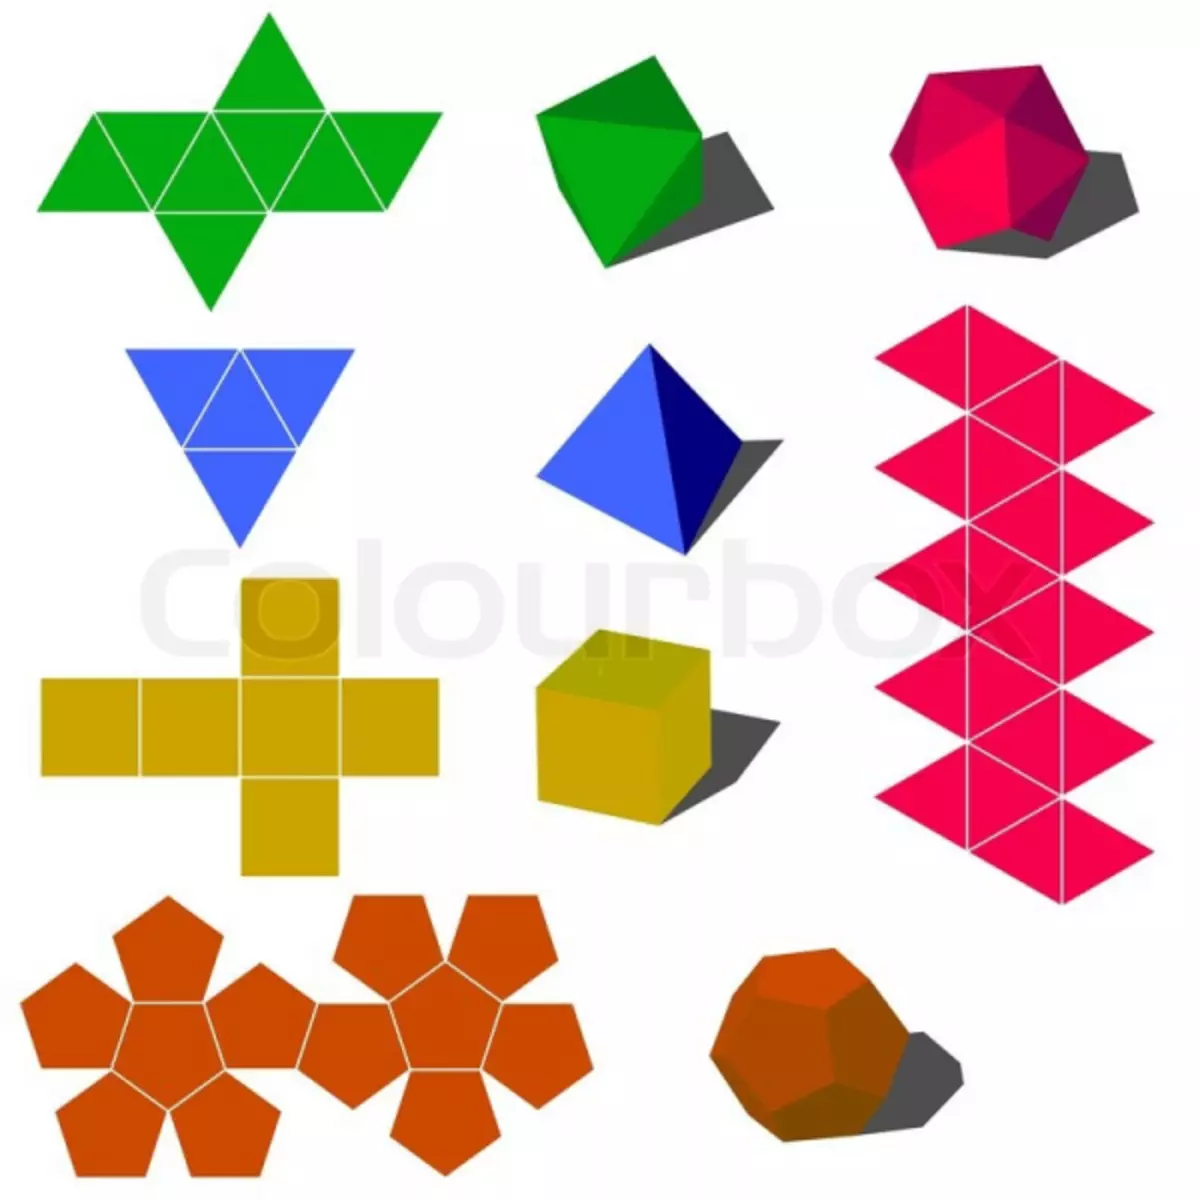 Geometrické tvary z papíru: Děláme řemeslo v origami techniku